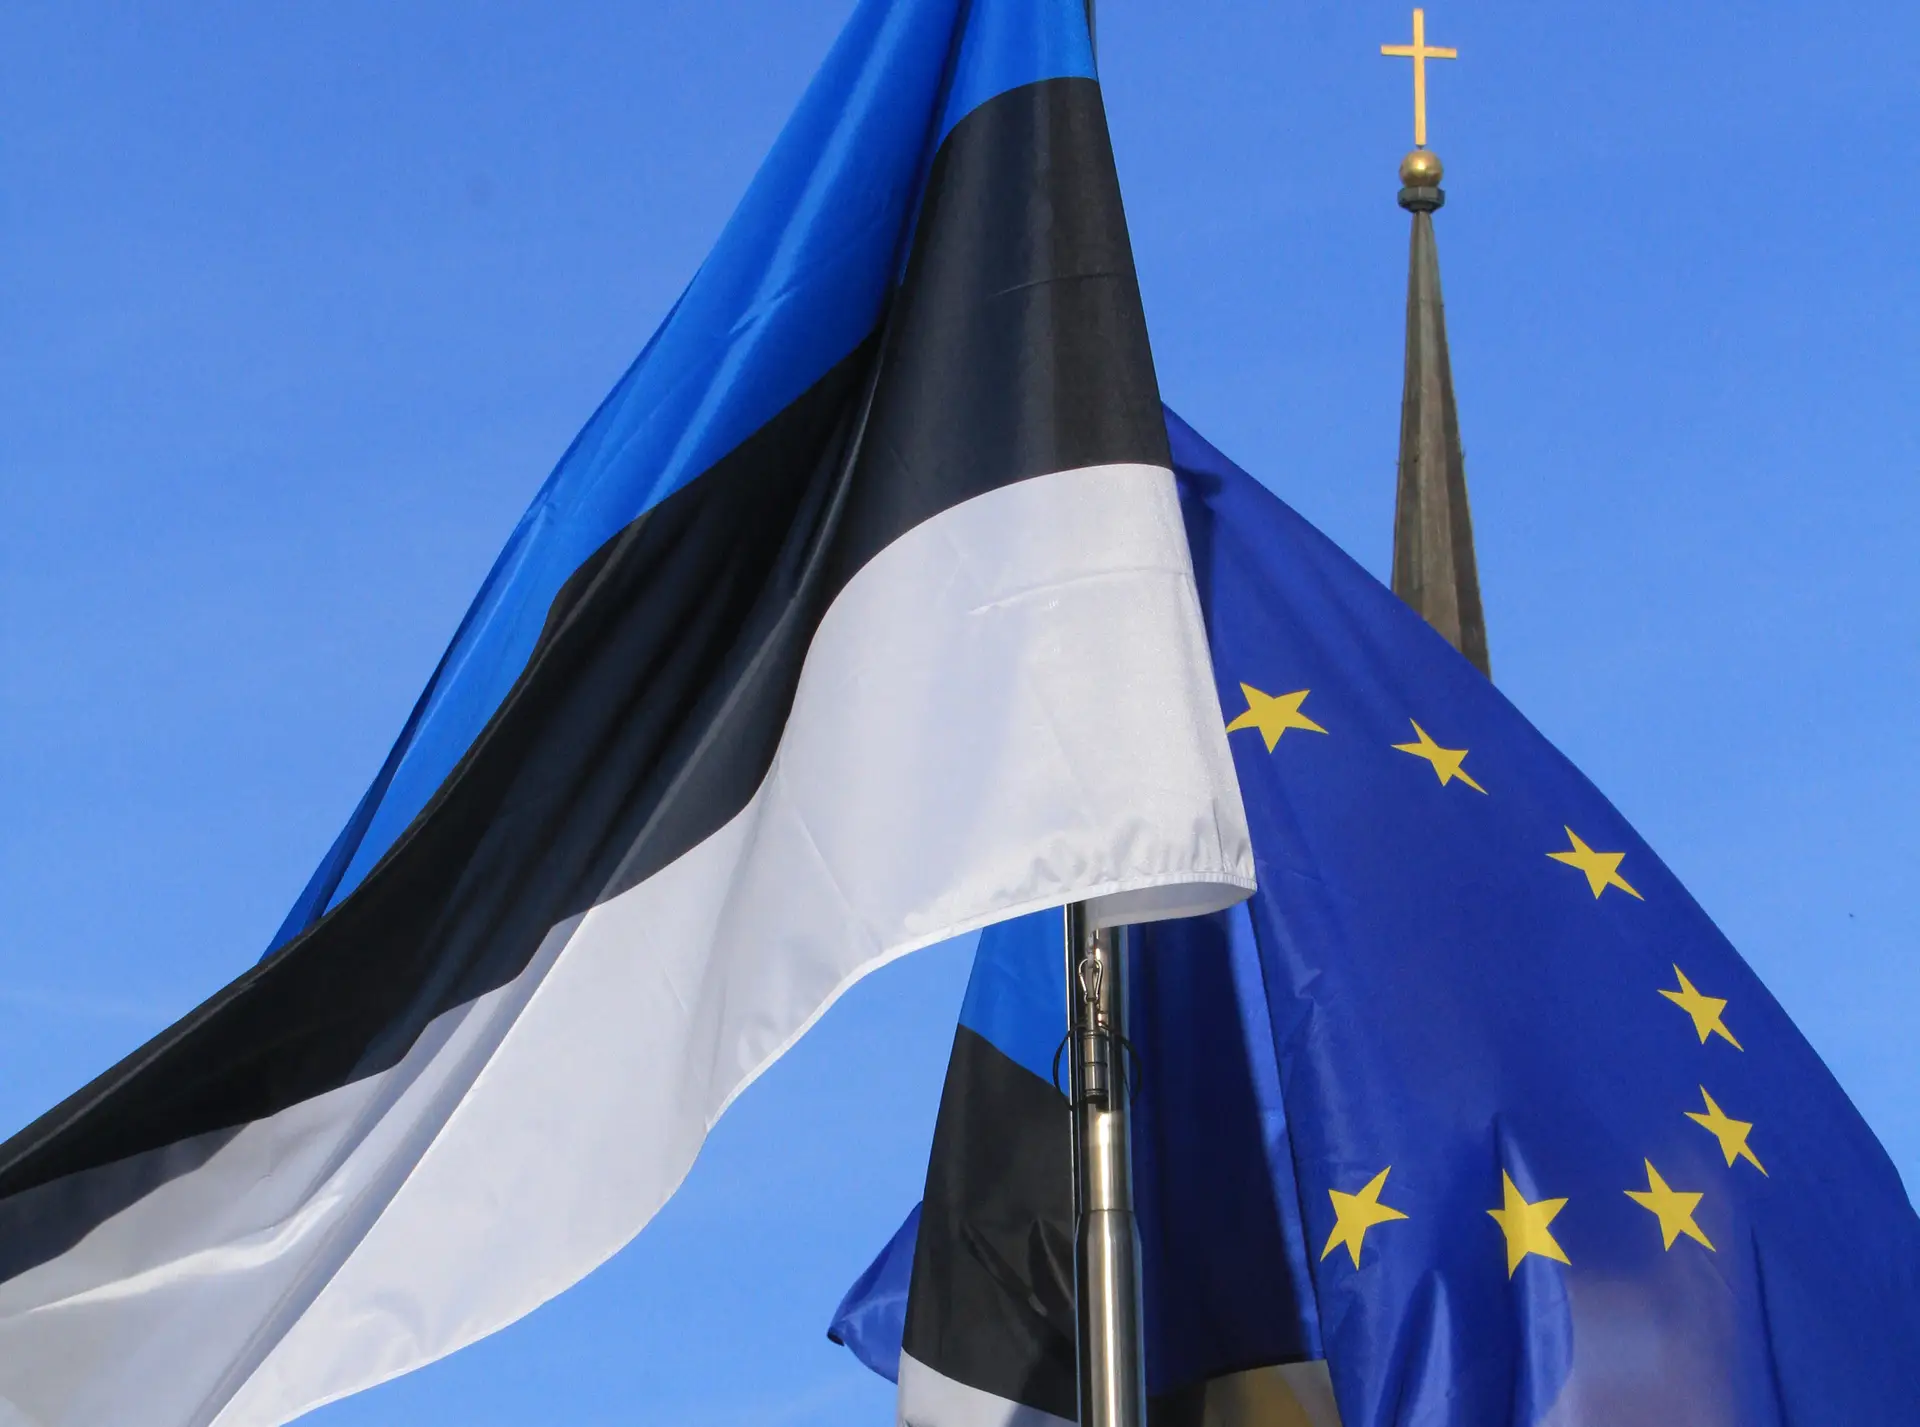 O trajeto da Estónia: das ocupações russa e soviética a país emergente da União Europeia